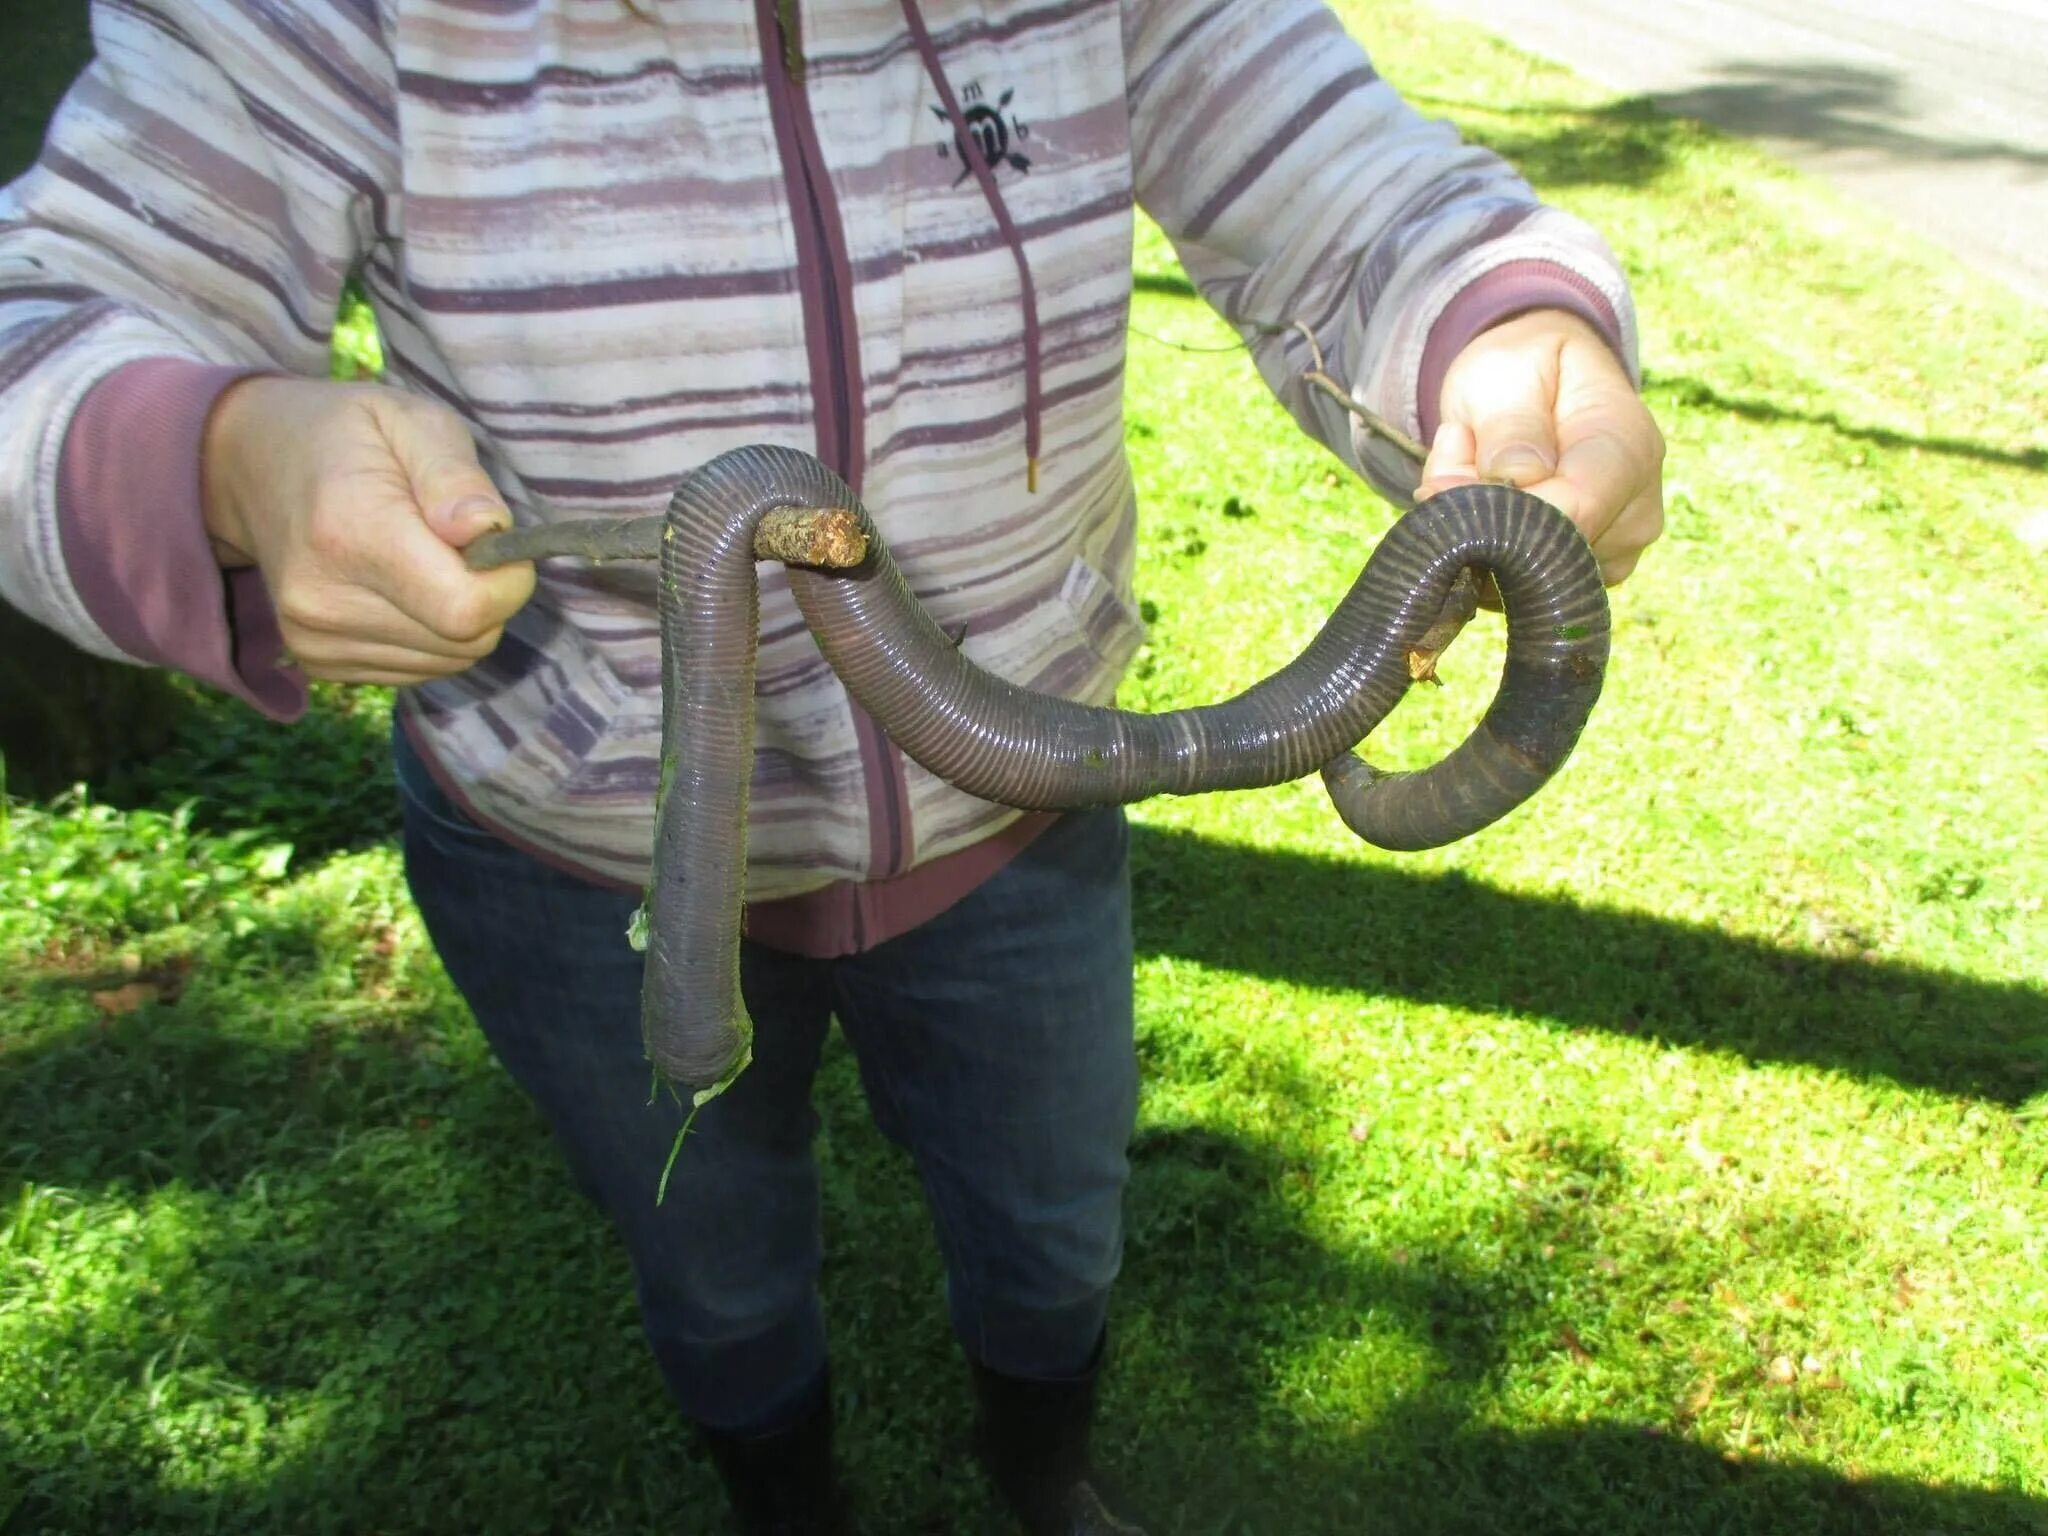 Земляной червь мегасколидес австралийский. Австралийский Земляной червь 3 метра. Большой Земляной червь выползок. Гигантский дождевой червь Австралии.